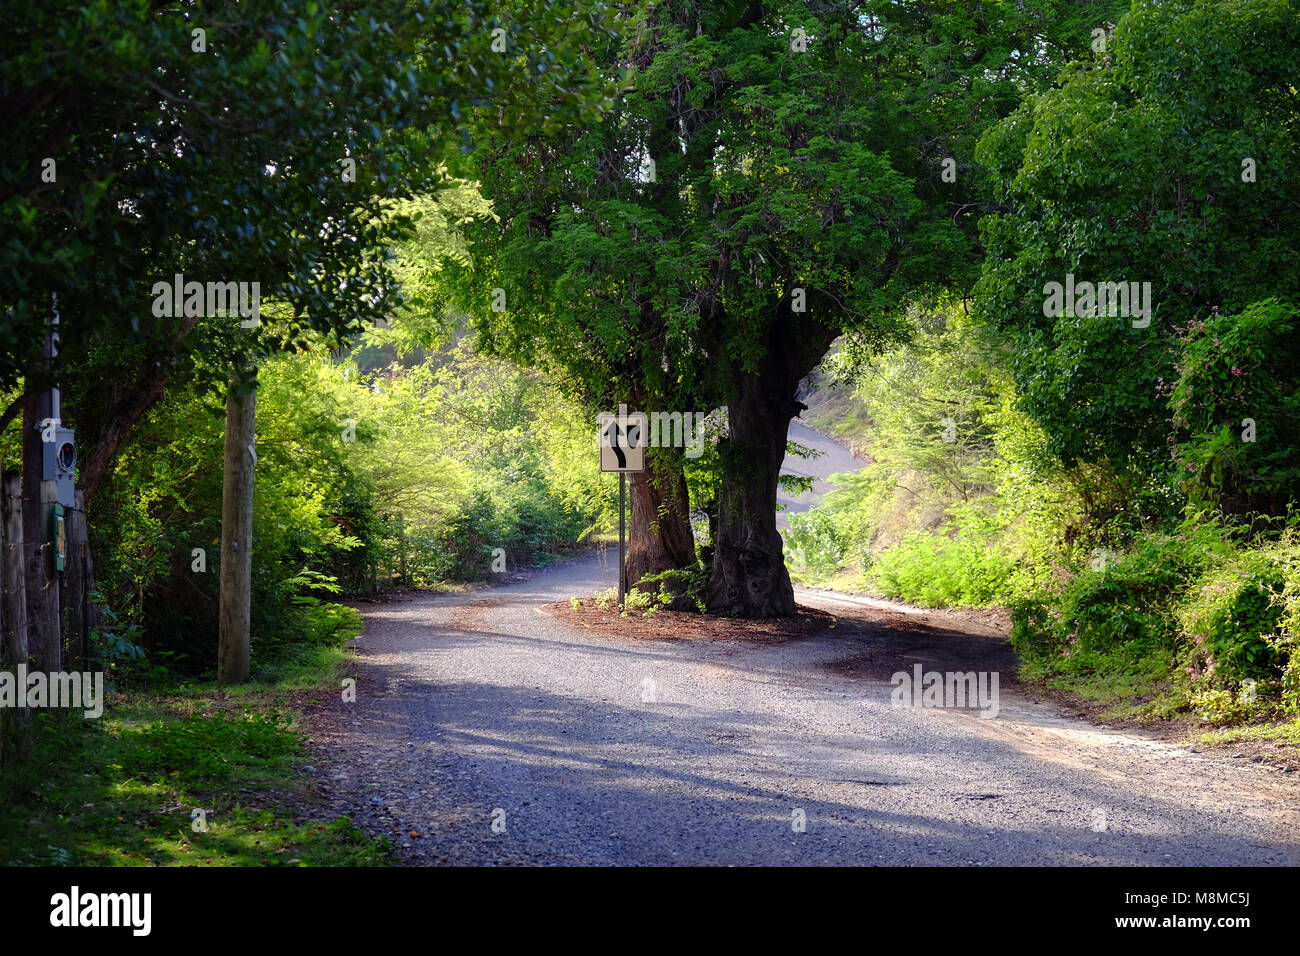 Bäume in der Mitte der Straße auf der Insel St. John, US Virgin Islands. Obwohl es ein Territorium der USA, die Autos auf der linken Seite fahren in St. John. Stockfoto